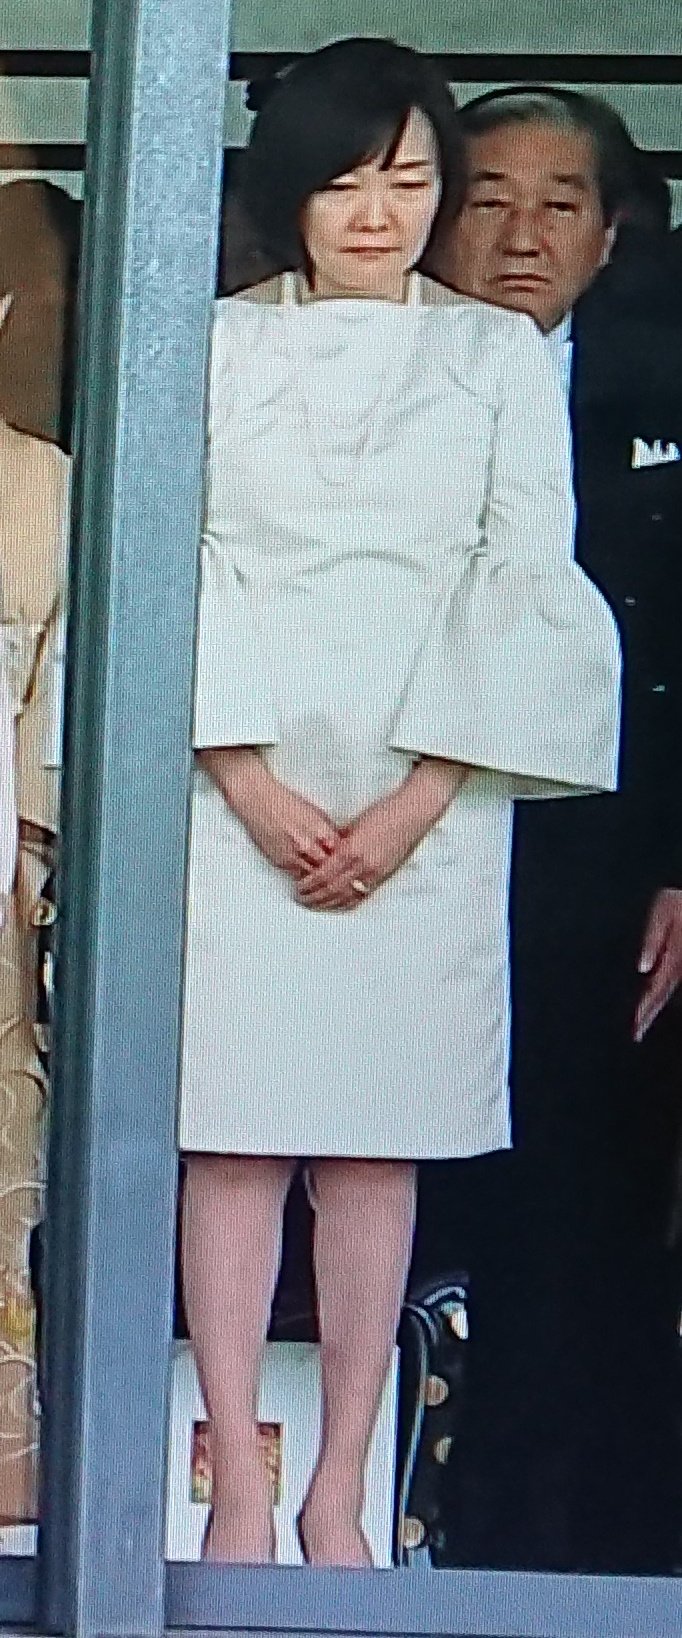 画像 昭恵さん何故にこのドレスを選んだのか一国の首相の